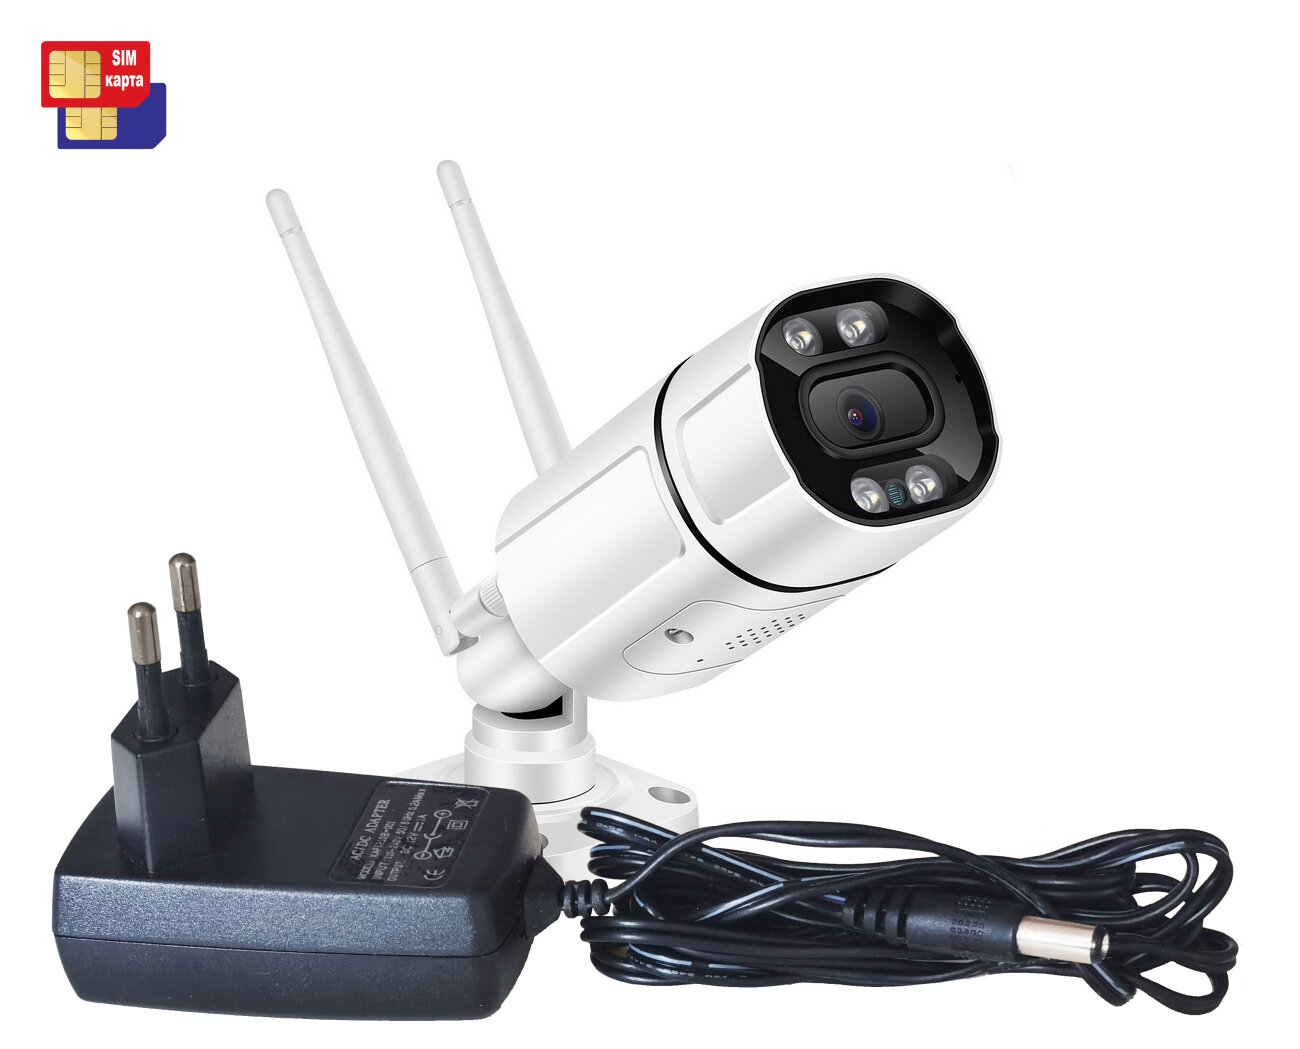 HD ком 3MP-4G Mod: SE248 (C99859FPA) - влагозащищена 4G IP-камера наблюдения с СИМ картой. Ночная подсветка. Поддержка аудио датчик движения